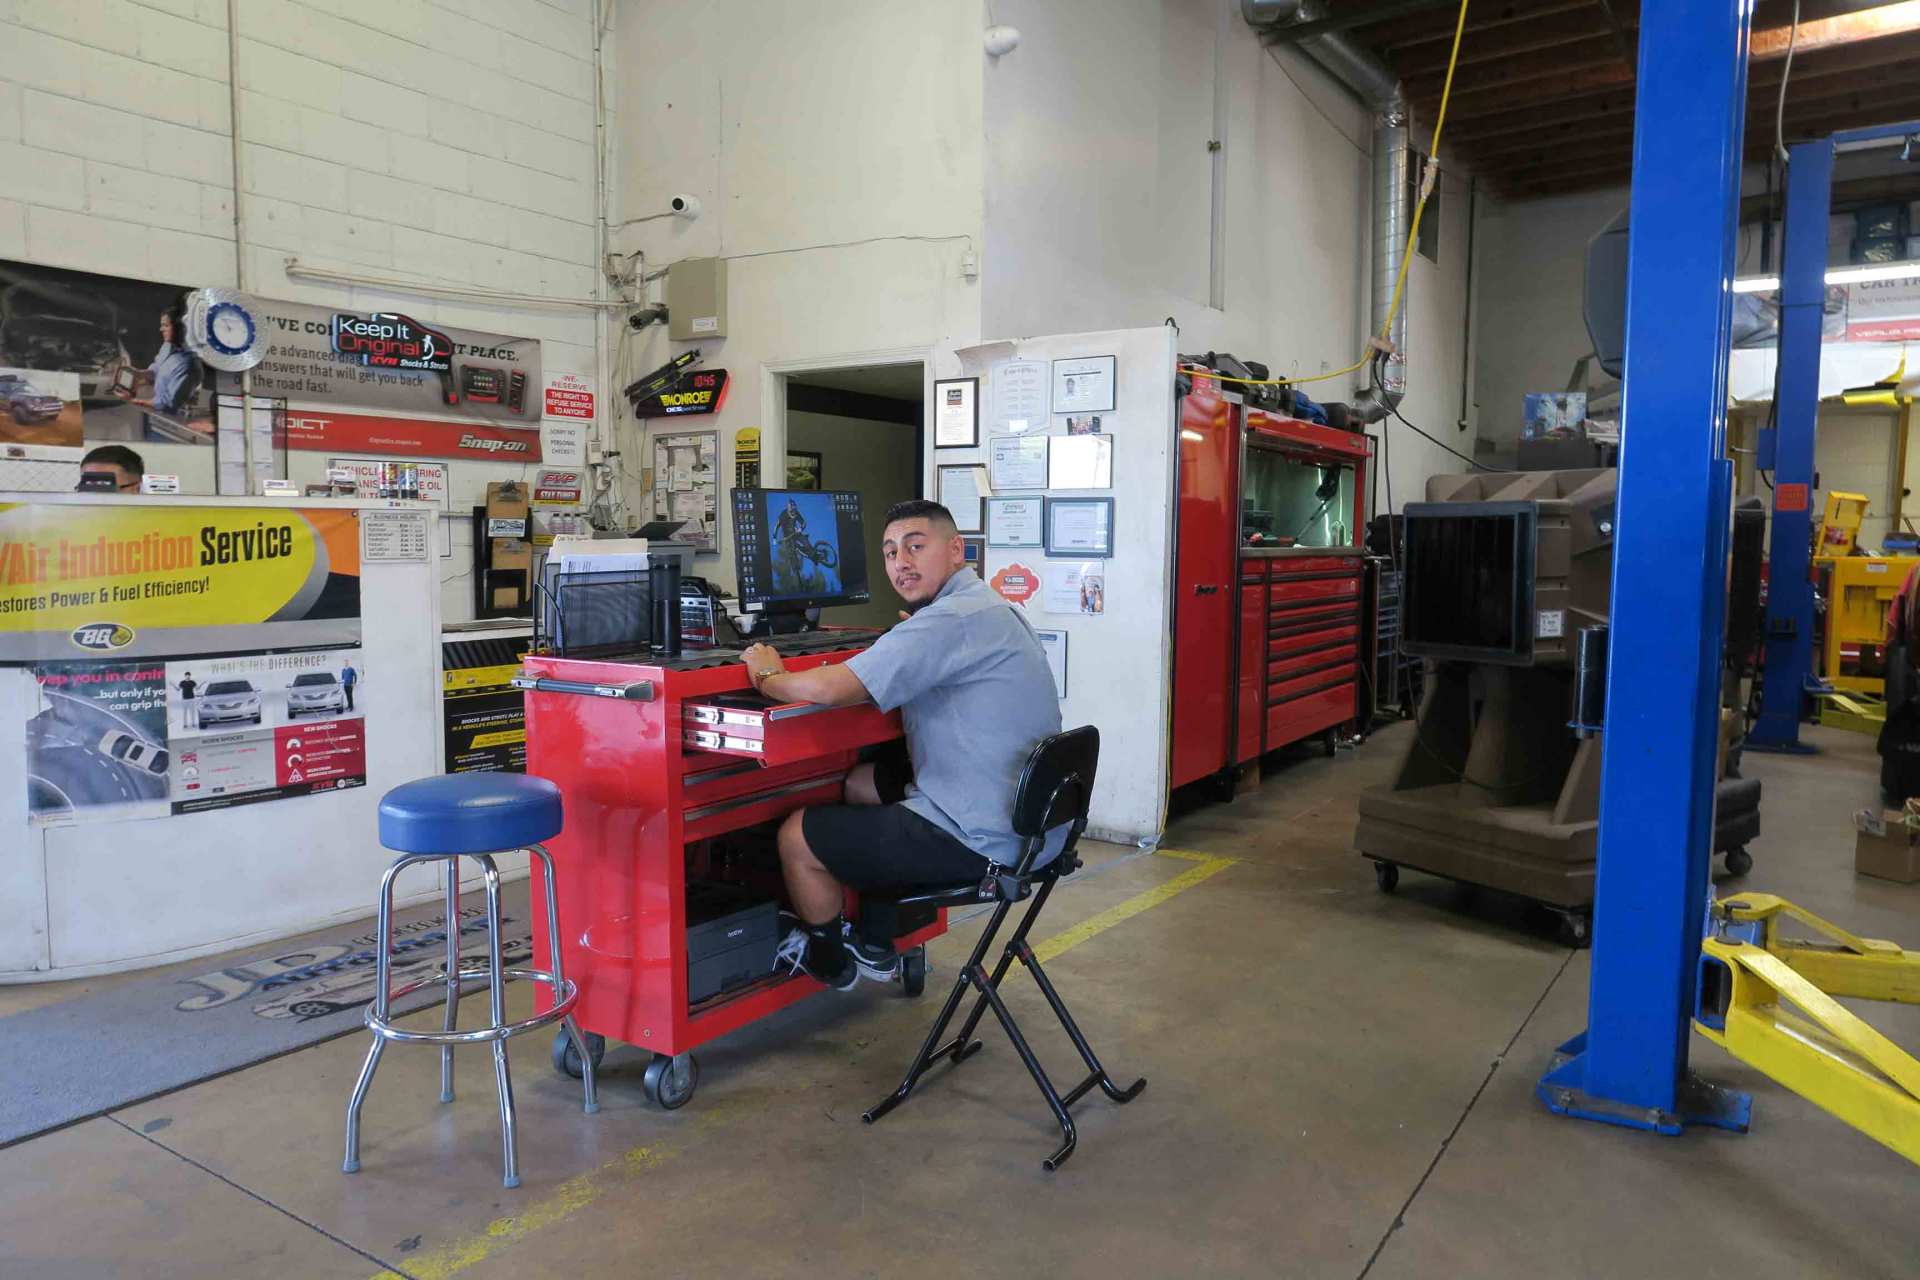 Emission Repair — Auto Mechanic in Ontario, California